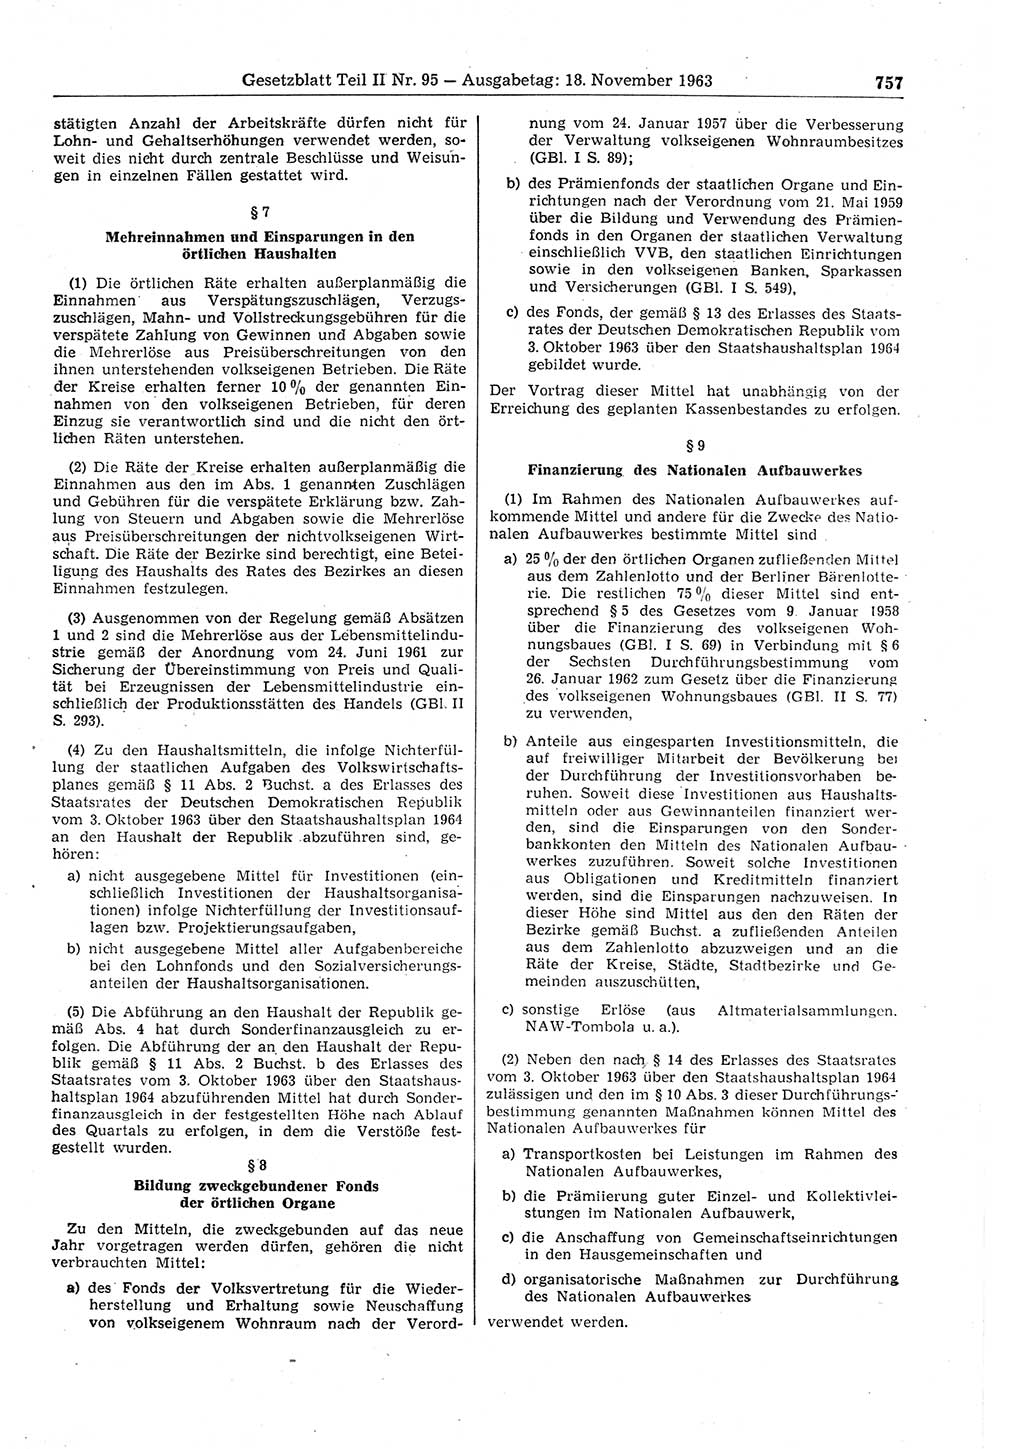 Gesetzblatt (GBl.) der Deutschen Demokratischen Republik (DDR) Teil ⅠⅠ 1963, Seite 757 (GBl. DDR ⅠⅠ 1963, S. 757)